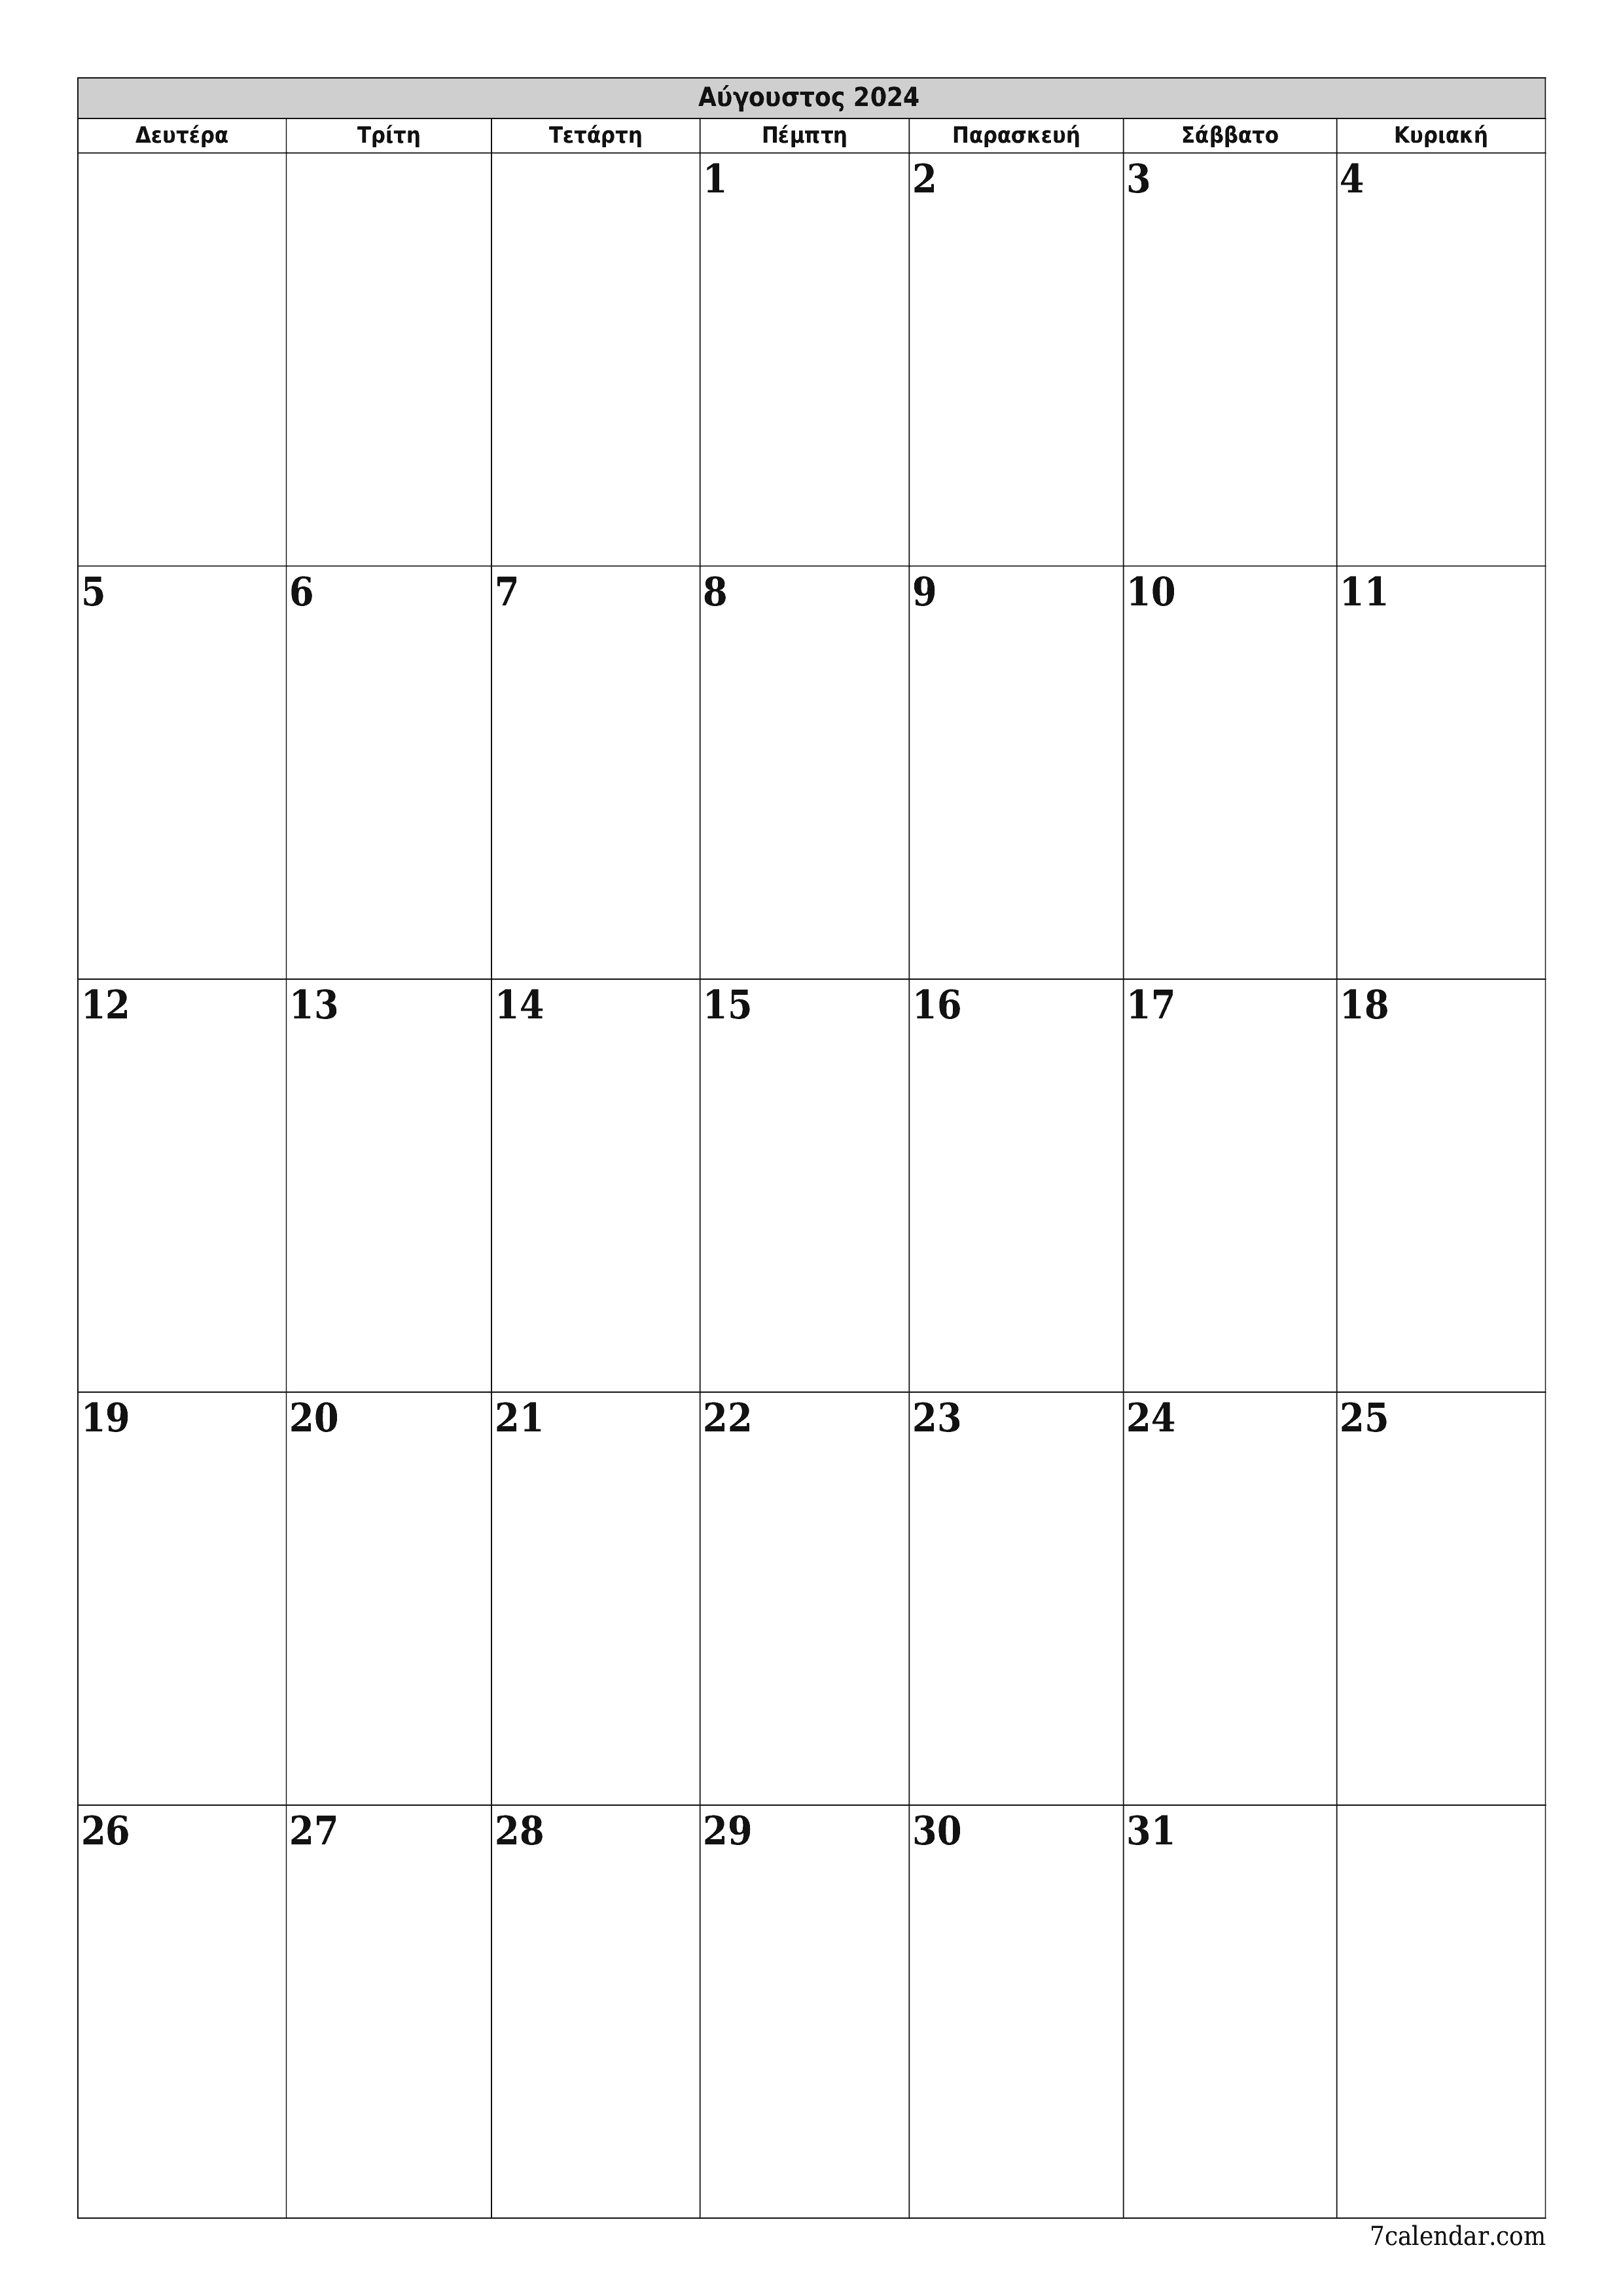 εκτυπώσιμο ημερολόγιο ημερολόγιο τοίχου πρότυπο ημερολογίου δωρεάν ημερολόγιοκατακόρυφος Μηνιαίο σχεδιαστής Ημερολόγιο Αύγουστος (Αυγ) 2024